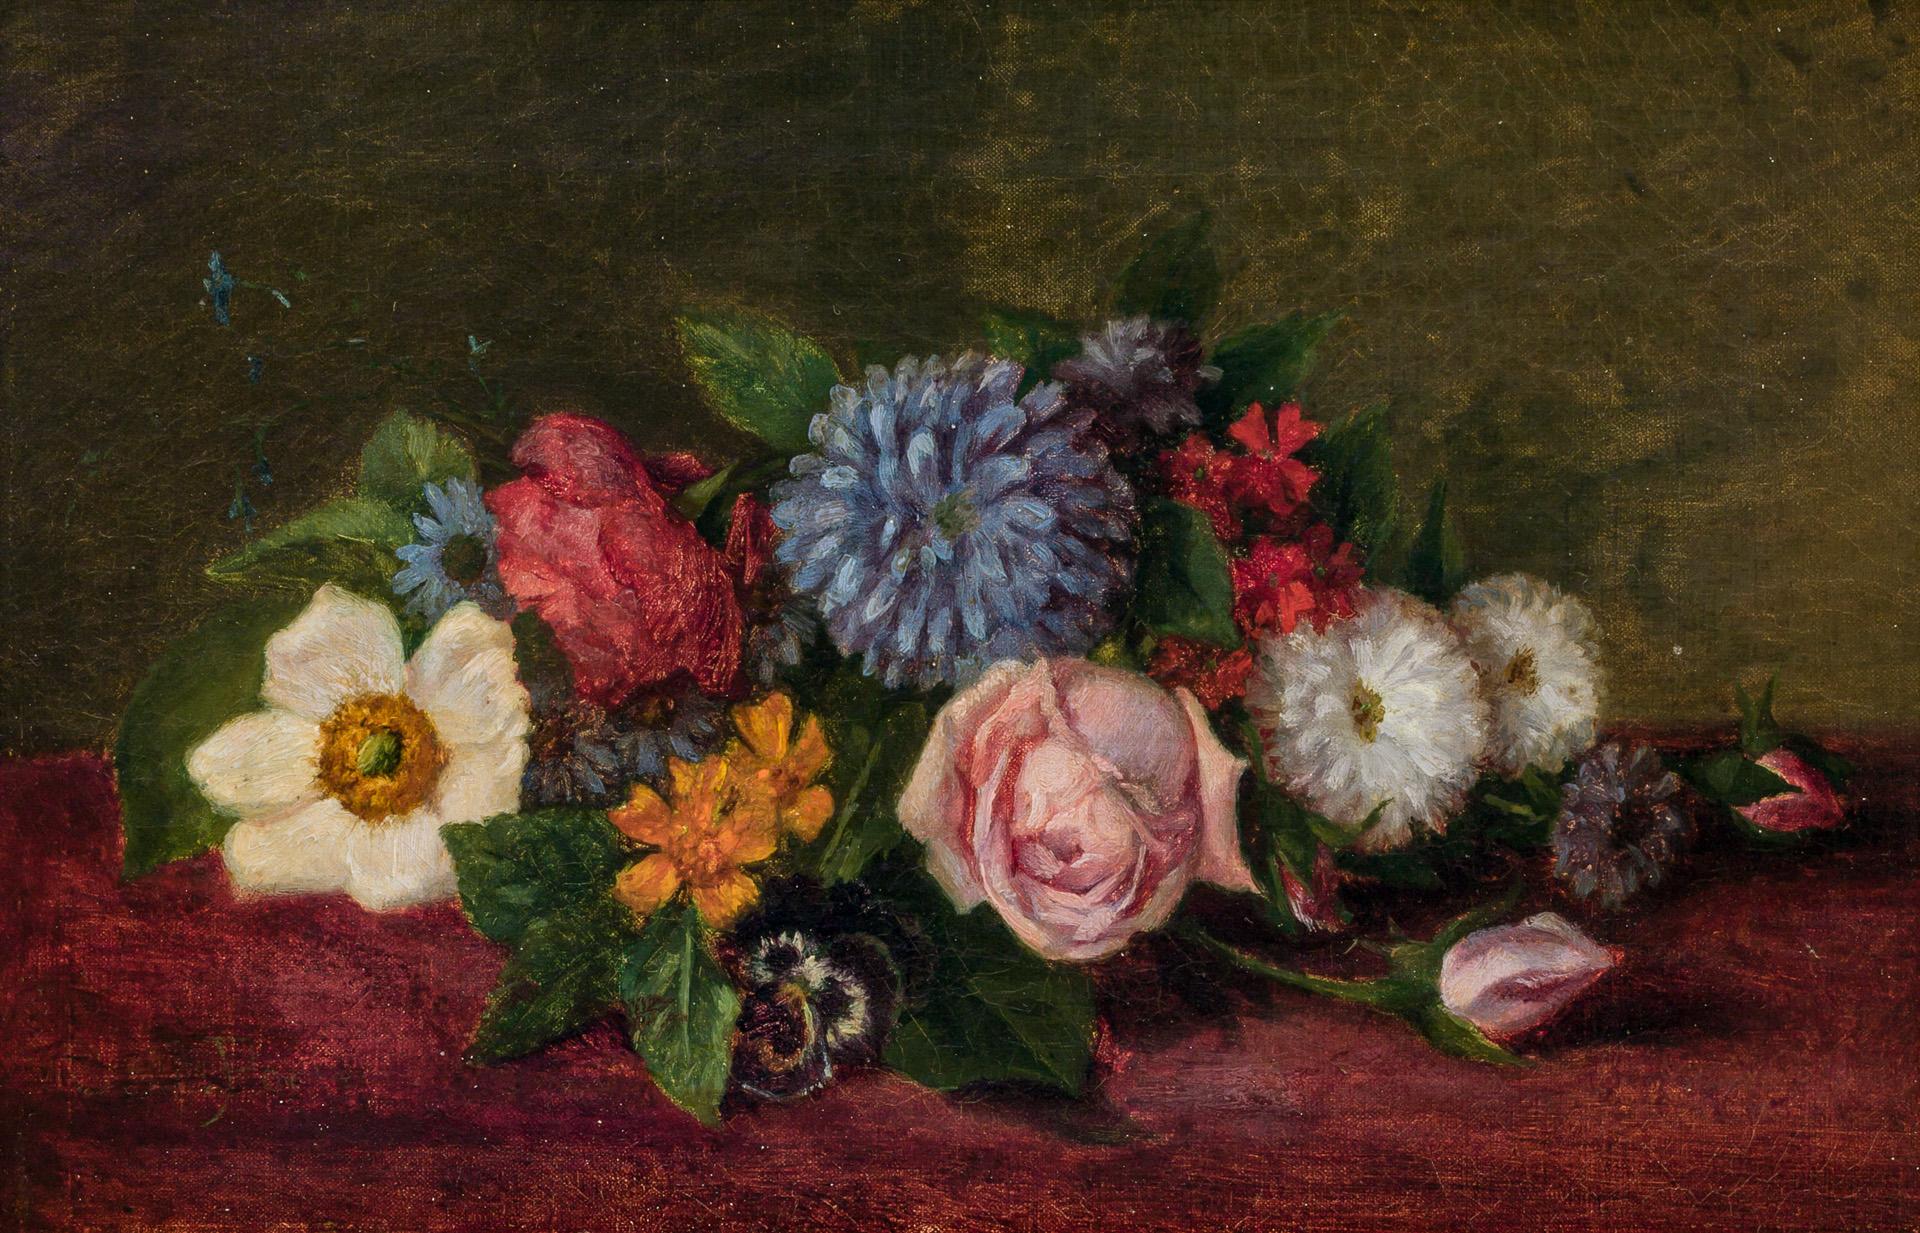 花卉靜物 by Charles Ethan Porter - 約 1900 年 - 19 x 29 釐米 